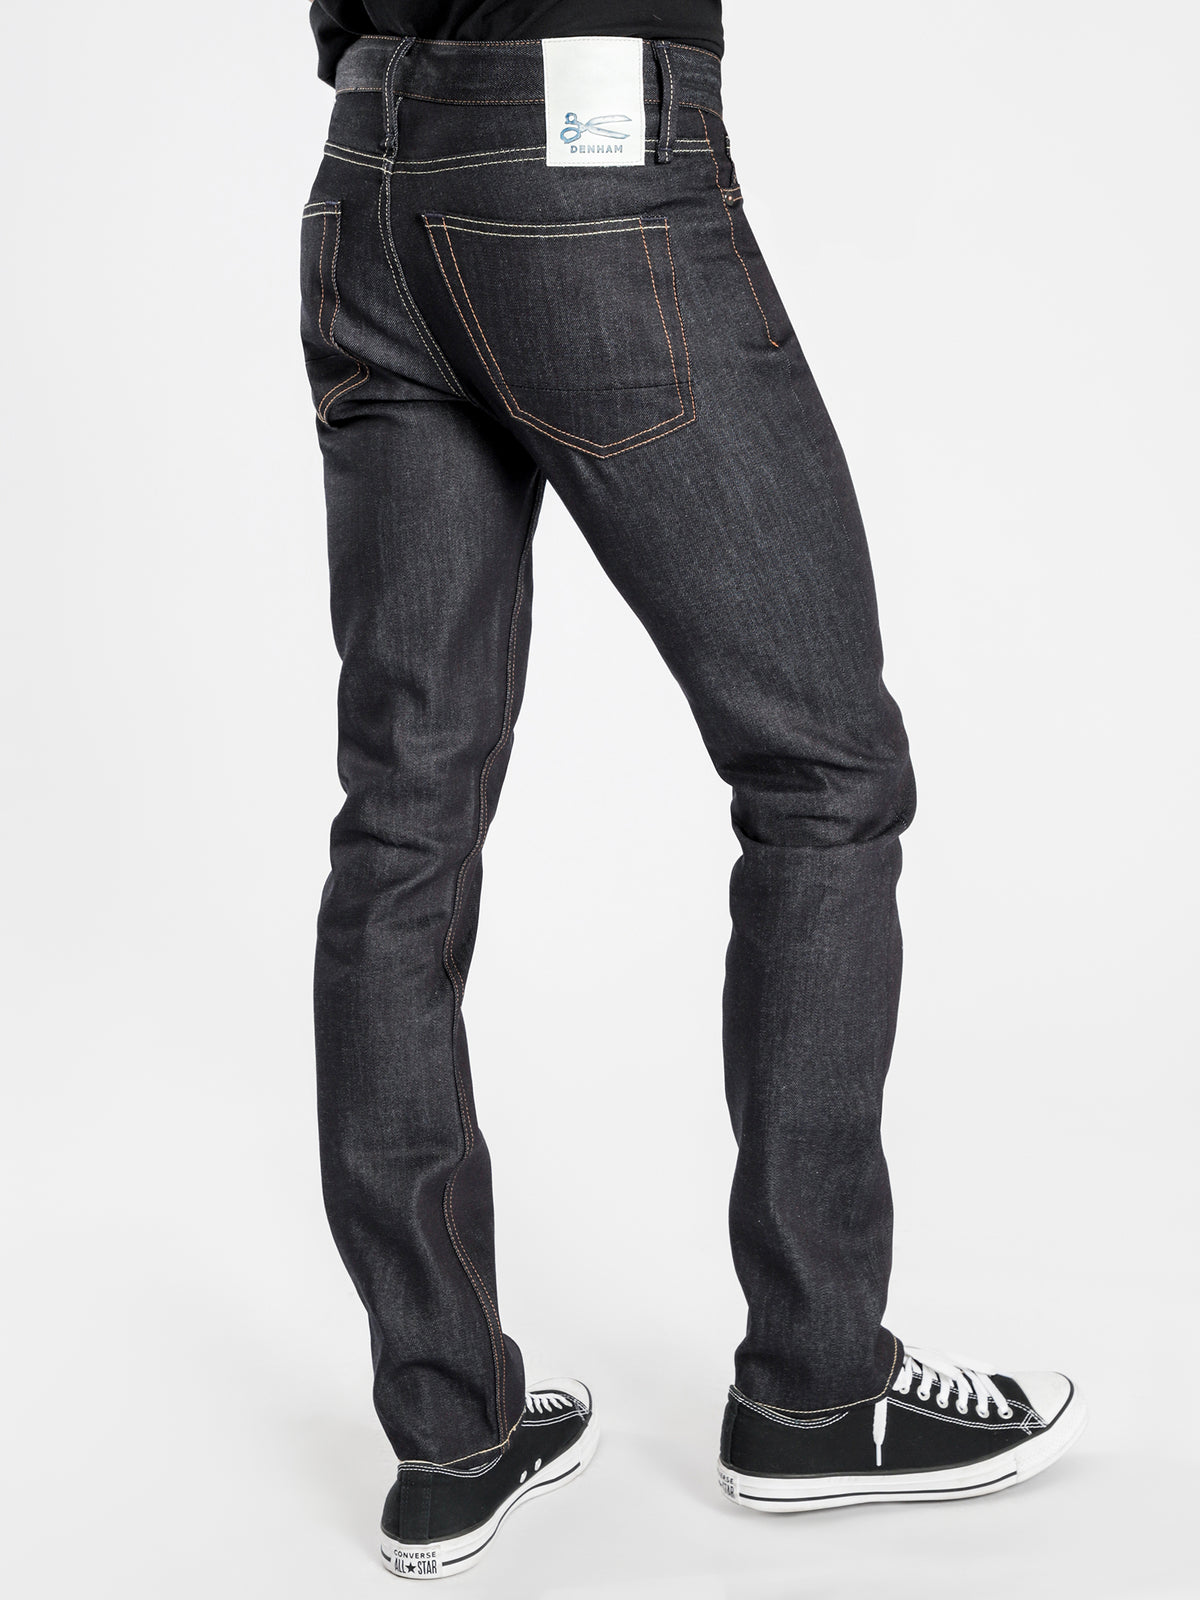 Razor Slim Virgin Jeans in VCSS Blue Denim